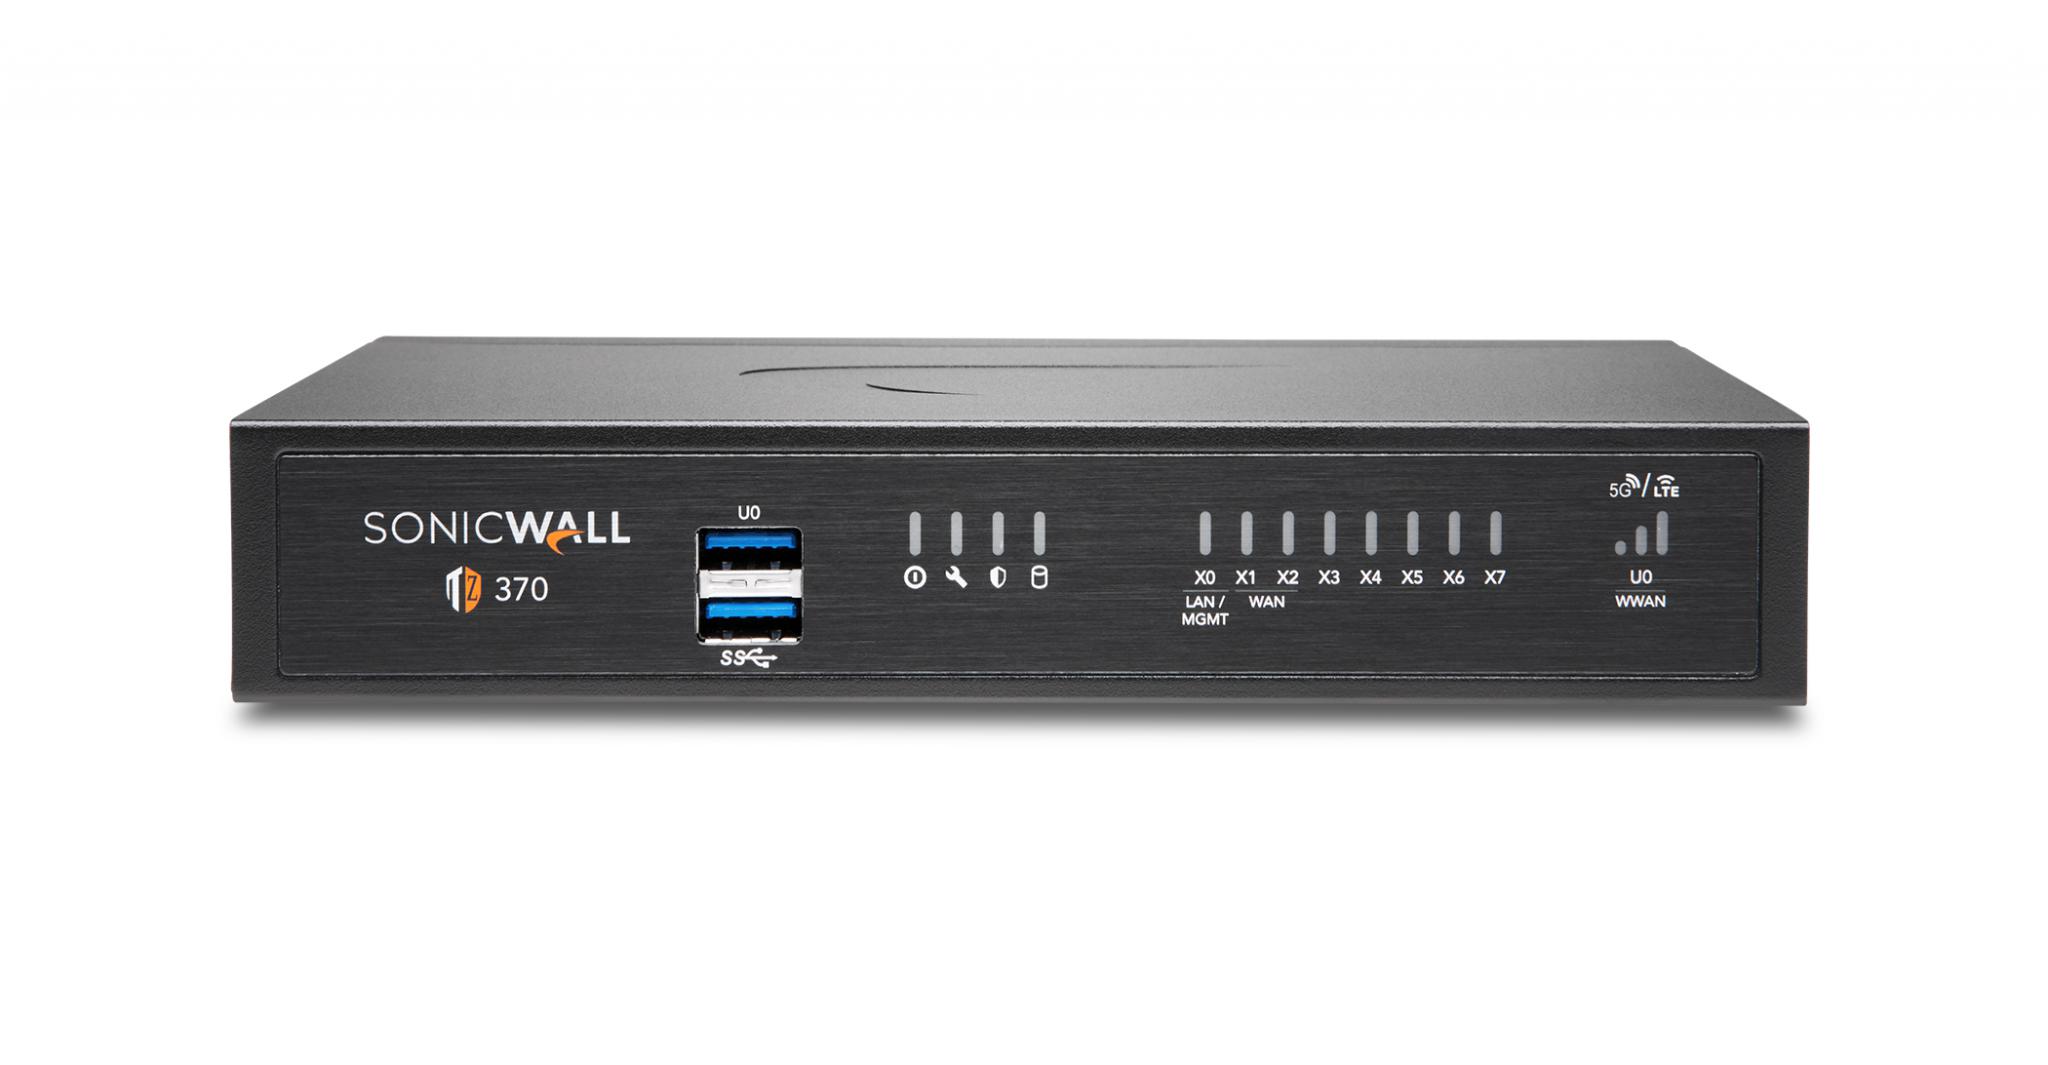 Firewall SonicWall model TZ370 8xGbE 2xUSB 3.0 firewall throughput 3Gbps, IPS throughput 1.5Gbps, VPN throughput 1.3Gbps, maxim 100 clienti SSL VPN, rackmount kit separat (02-SSC-3113), PSU alimentator (36W), necesita licenta aditionala servicii securitate